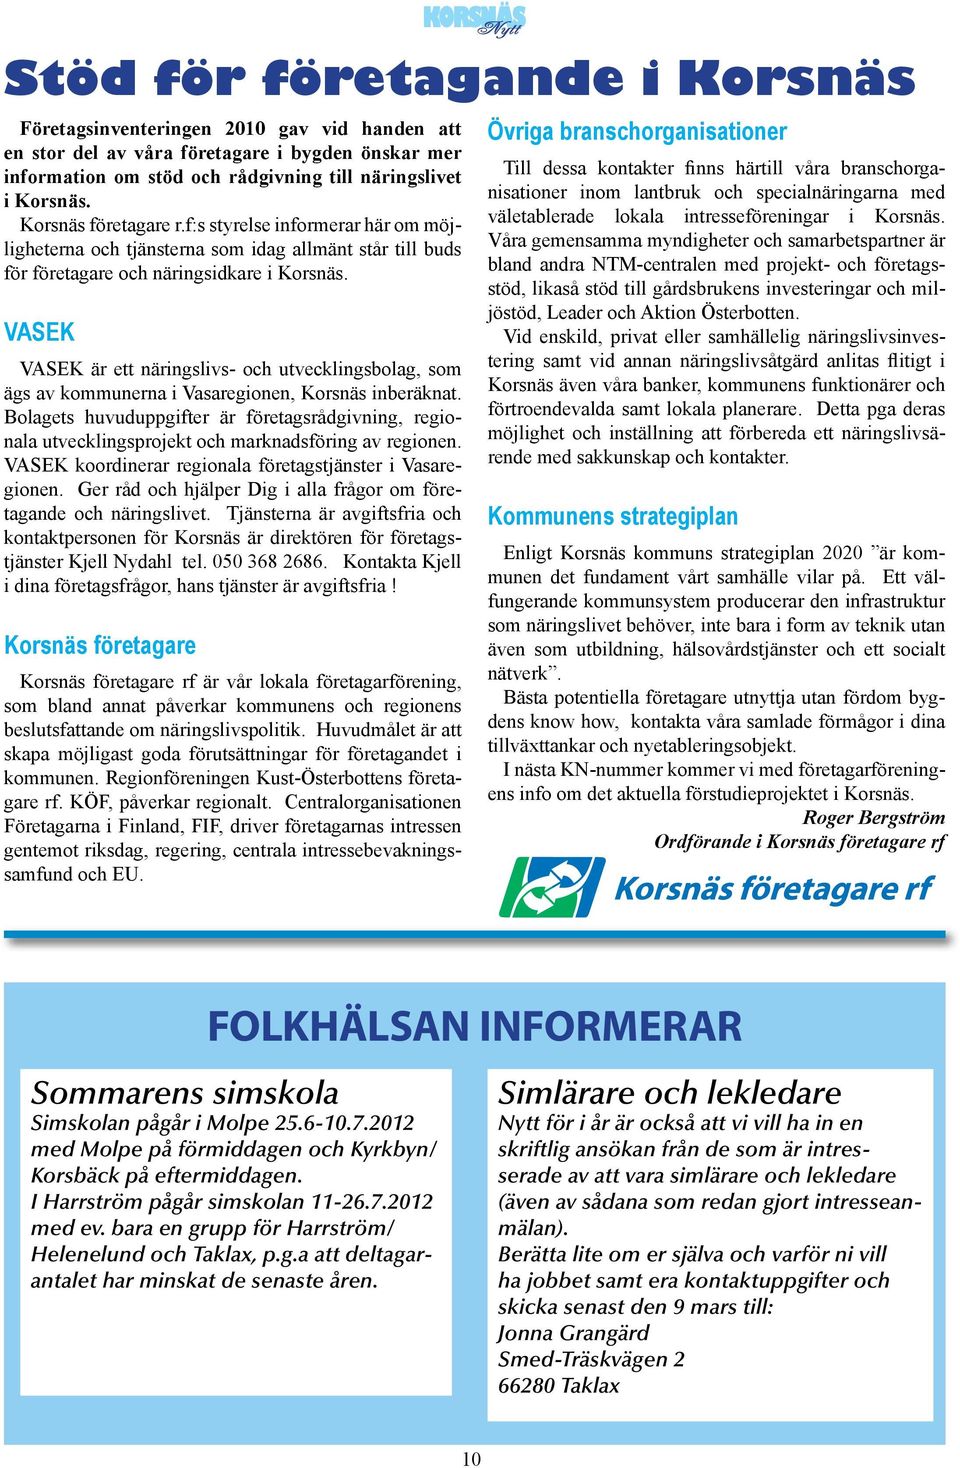 VASEK VASEK är ett näringslivs- och utvecklingsbolag, som ägs av kommunerna i Vasaregionen, Korsnäs inberäknat.